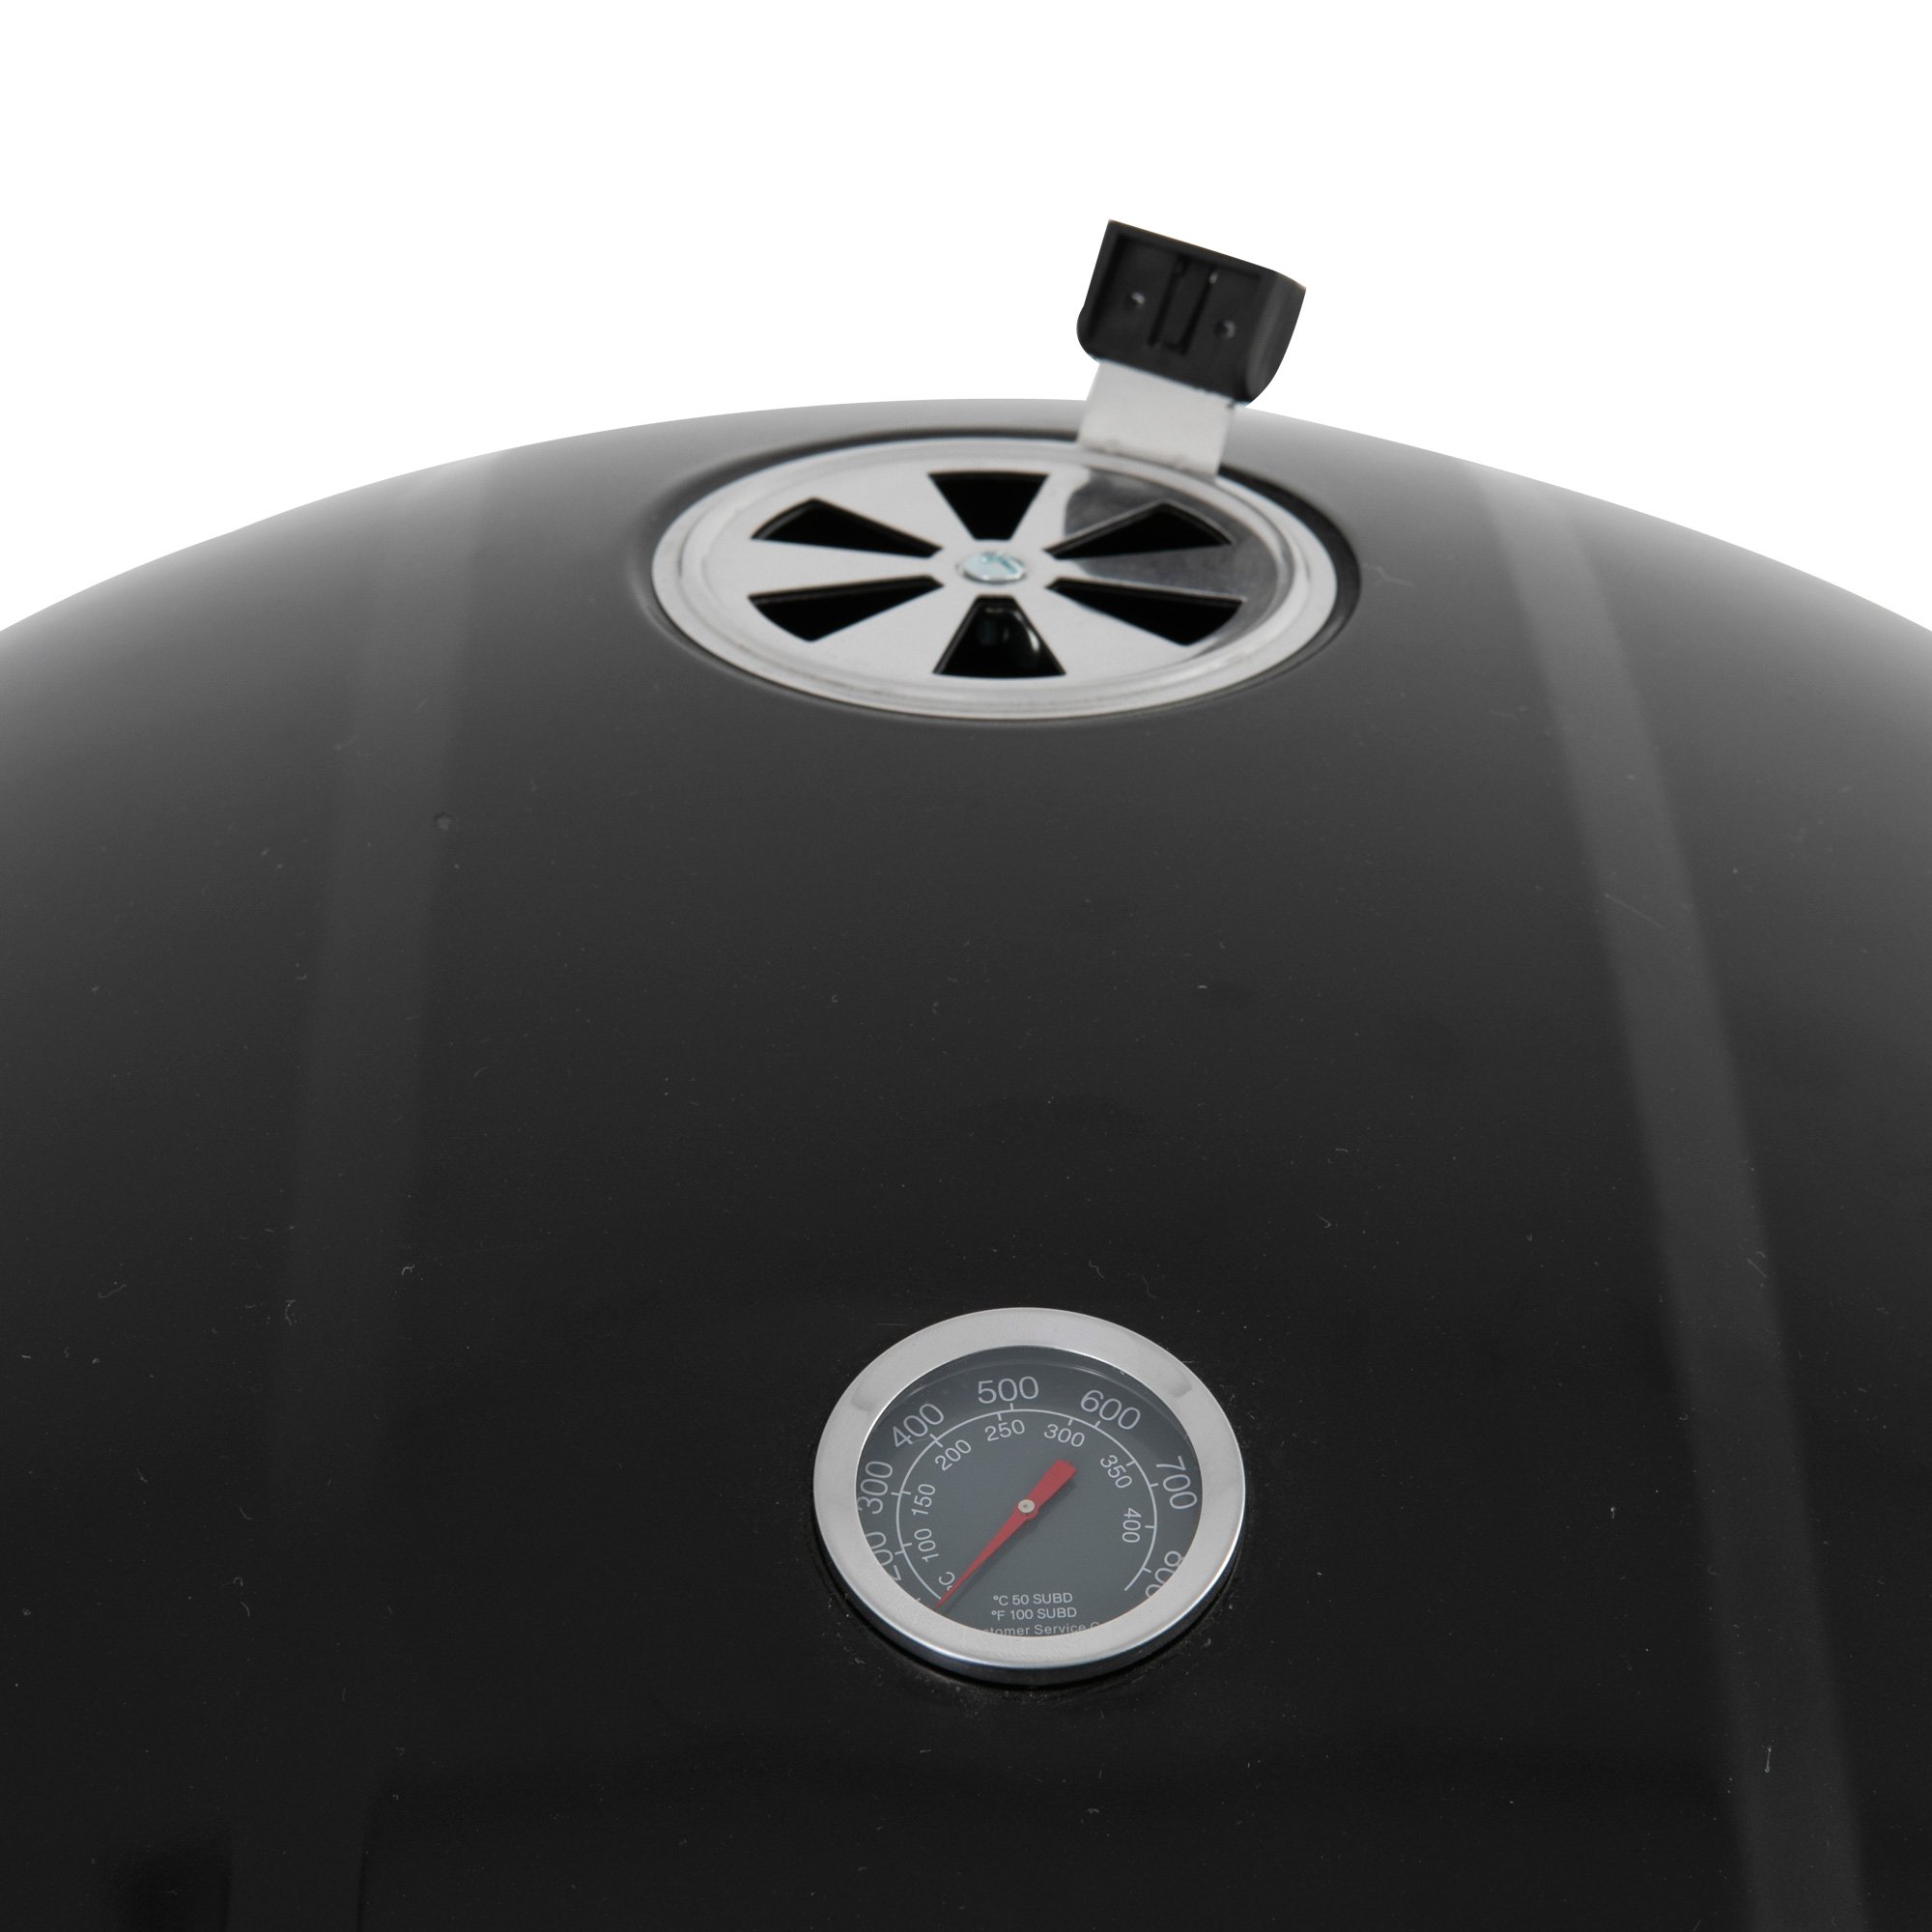 DREAMO Portable Charcoal Roaster Details Show